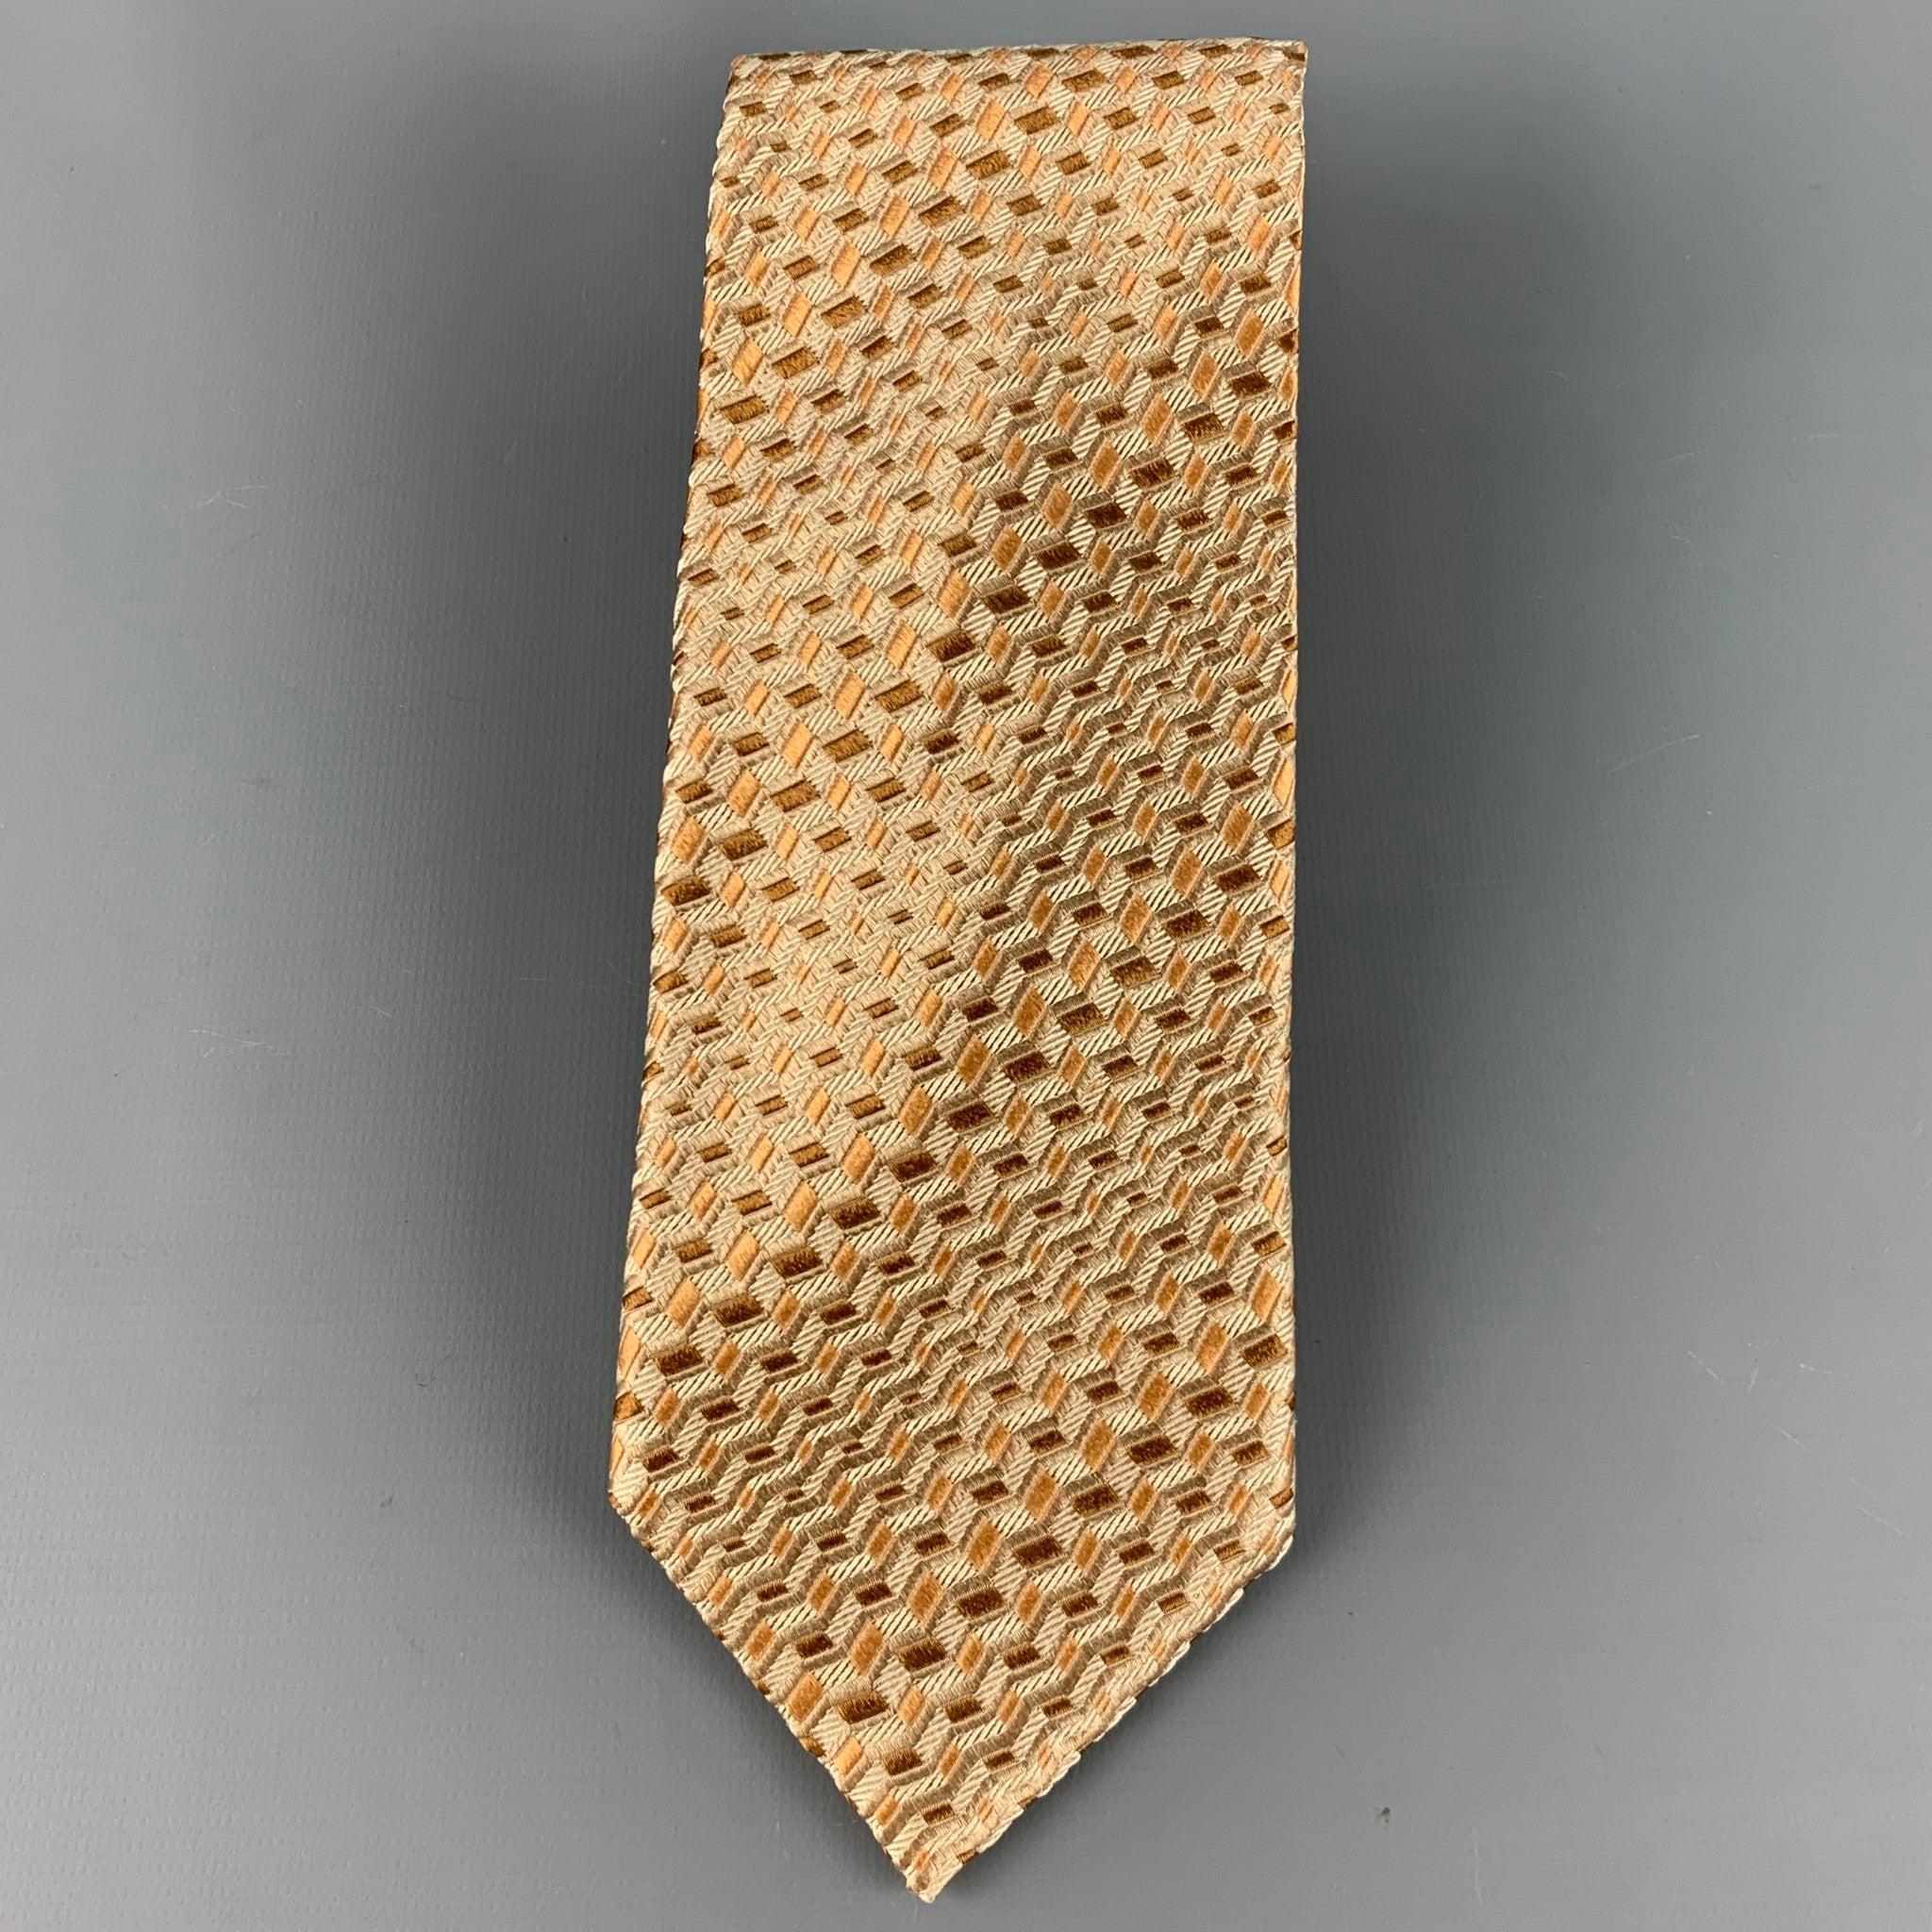 CANALI Krawatte aus 100 % Seide mit einem hellbraunen und taupefarbenen Zickzack-Jacquard-Muster. Made in Italy. sehr guter gebrauchter Zustand. 

Abmessungen: 
  Breite: 4 Zoll Länge: 59 Zoll 
  
  
 
Sui Generis-Referenz: 126582
Kategorie: